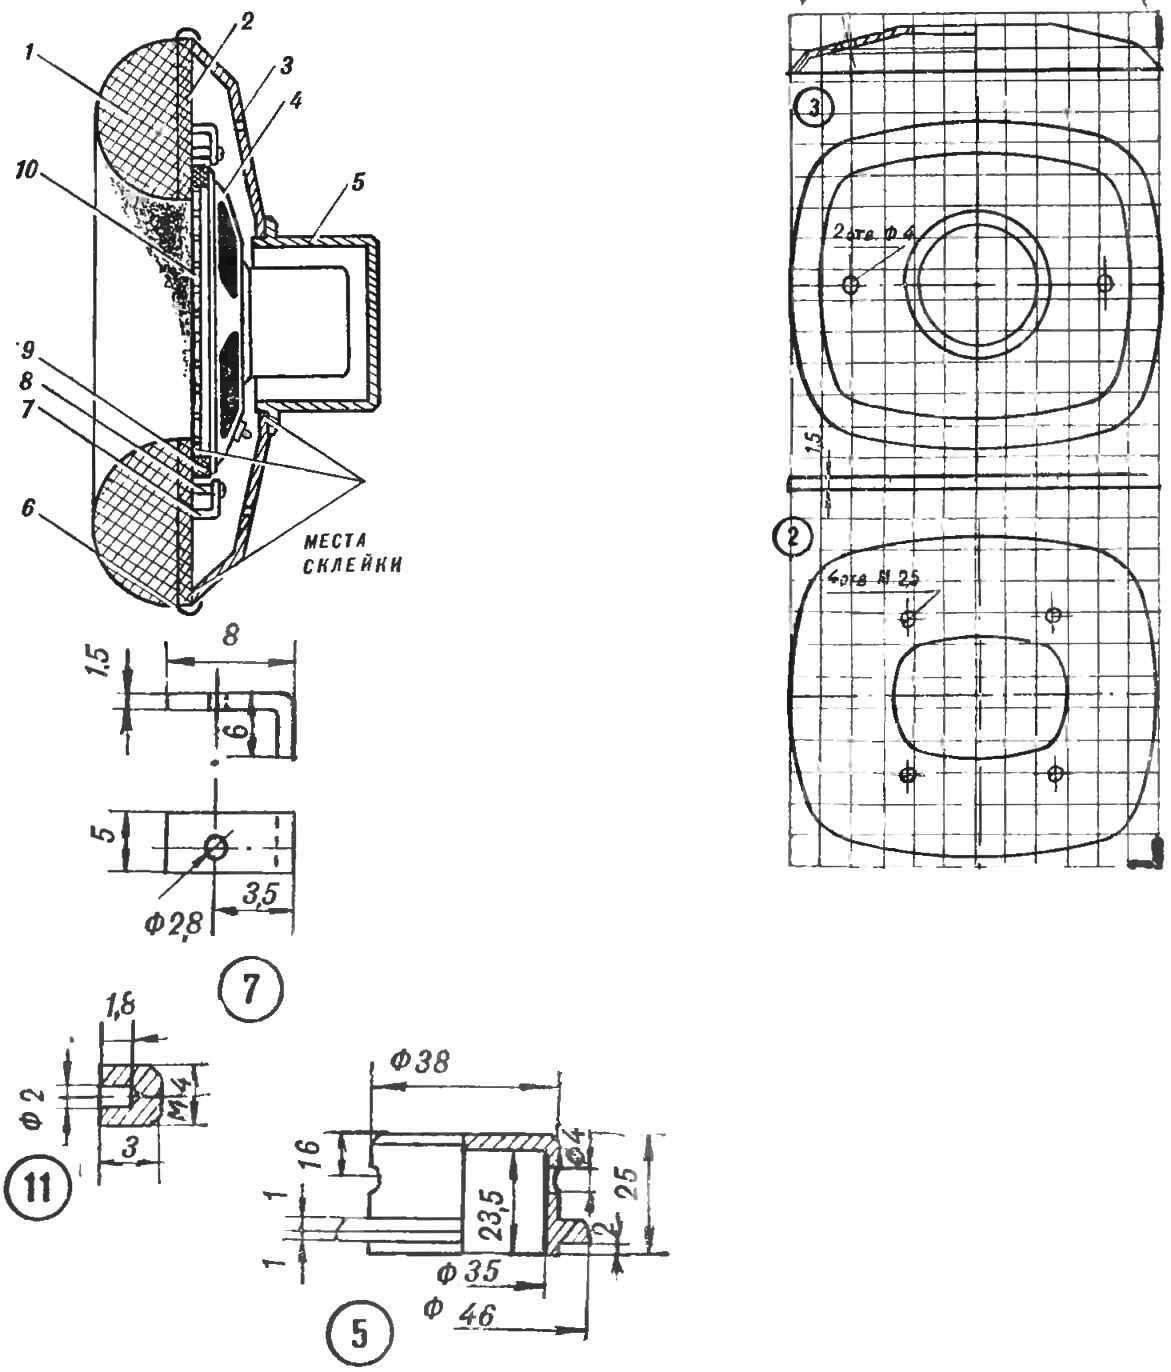 Fig. 2. Phone design